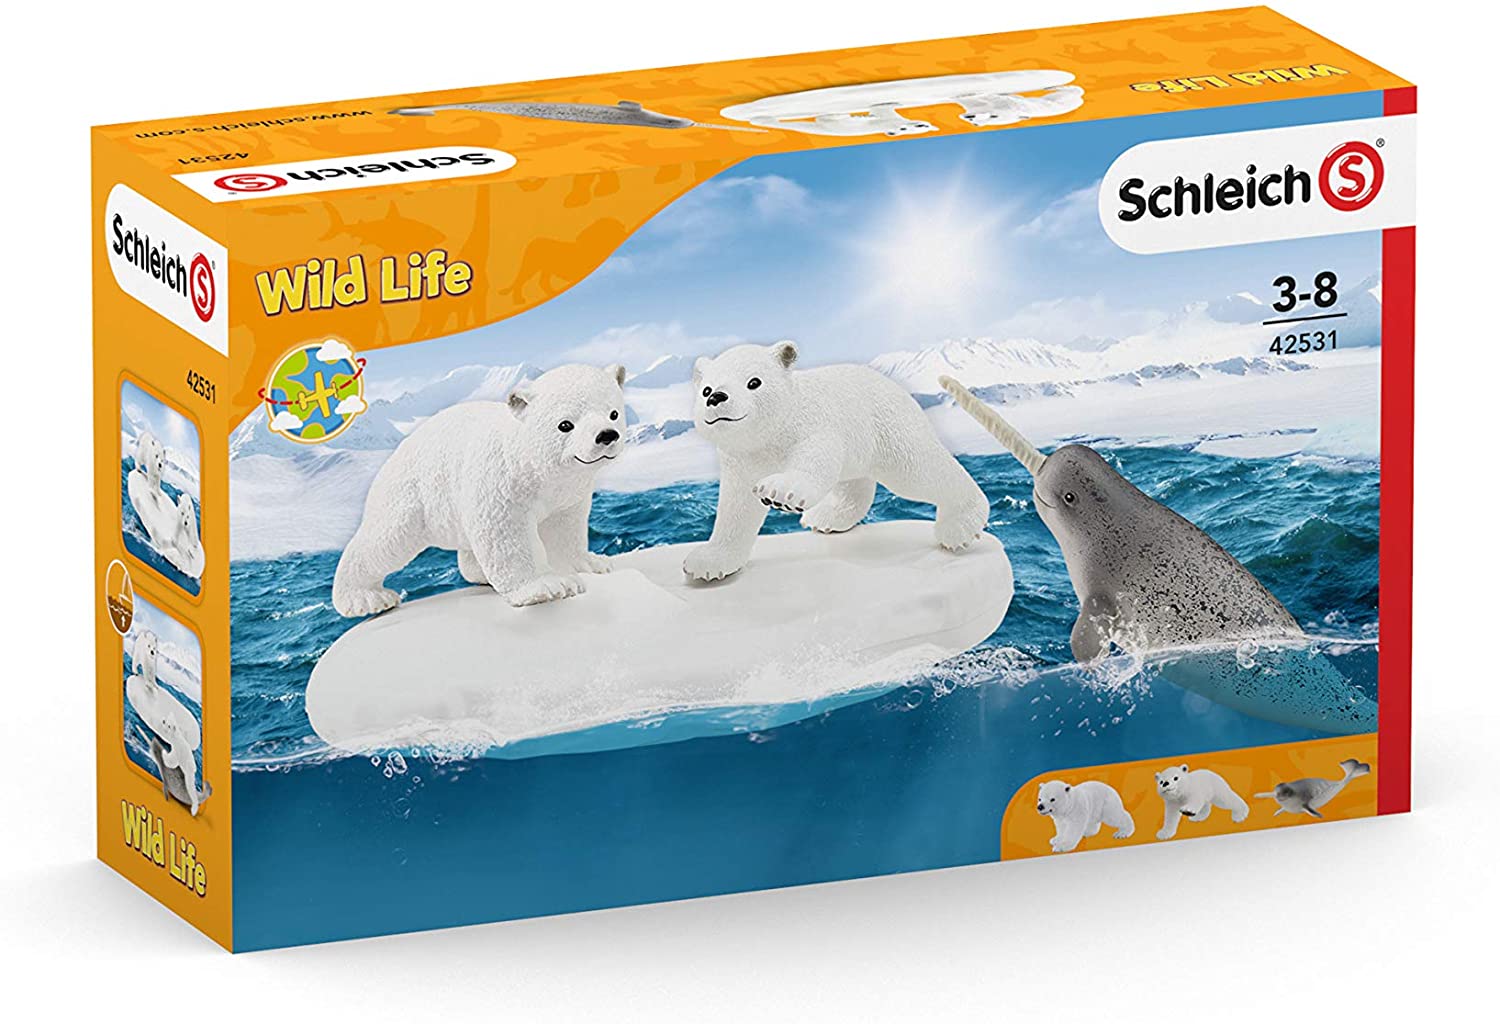 Schleich Wild Life Polar Playground